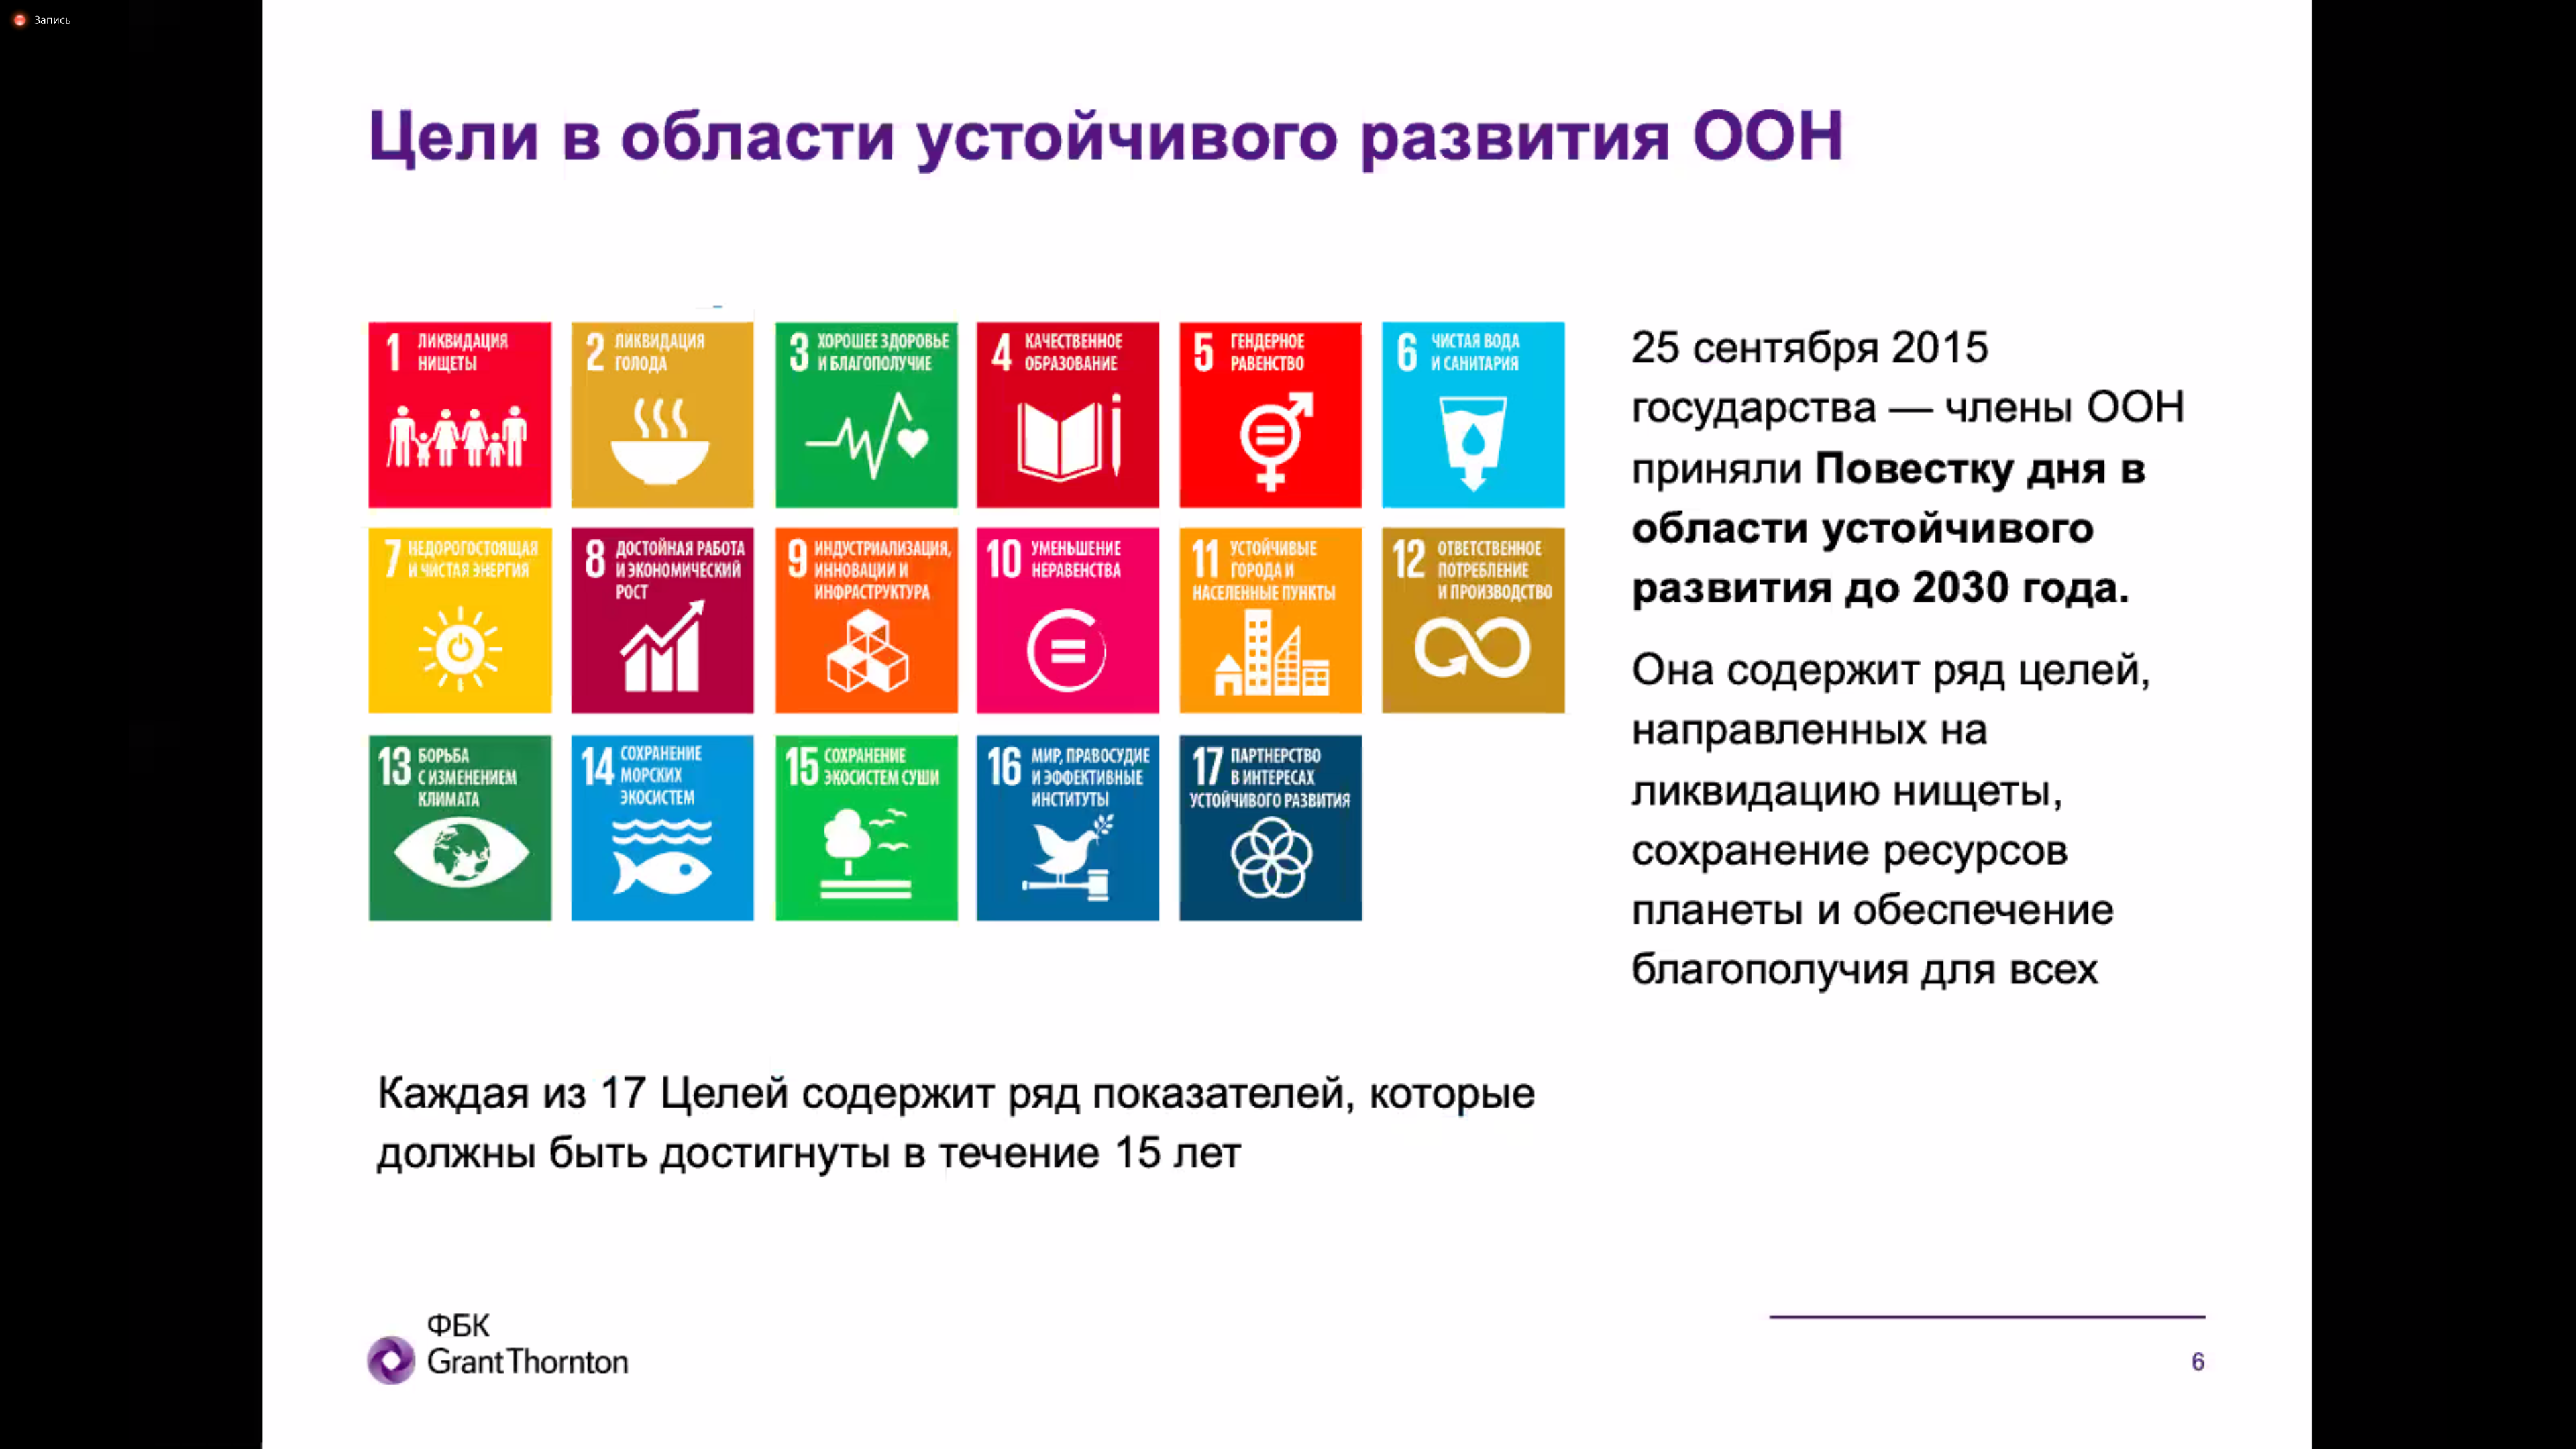 Цели устойчивого развития ООН 2015-2030. Цели устойчивого развития ООН. ООН цели устойчивого развития до 2030 года. 17 Целей устойчивого развития ООН. Цели оон 2015